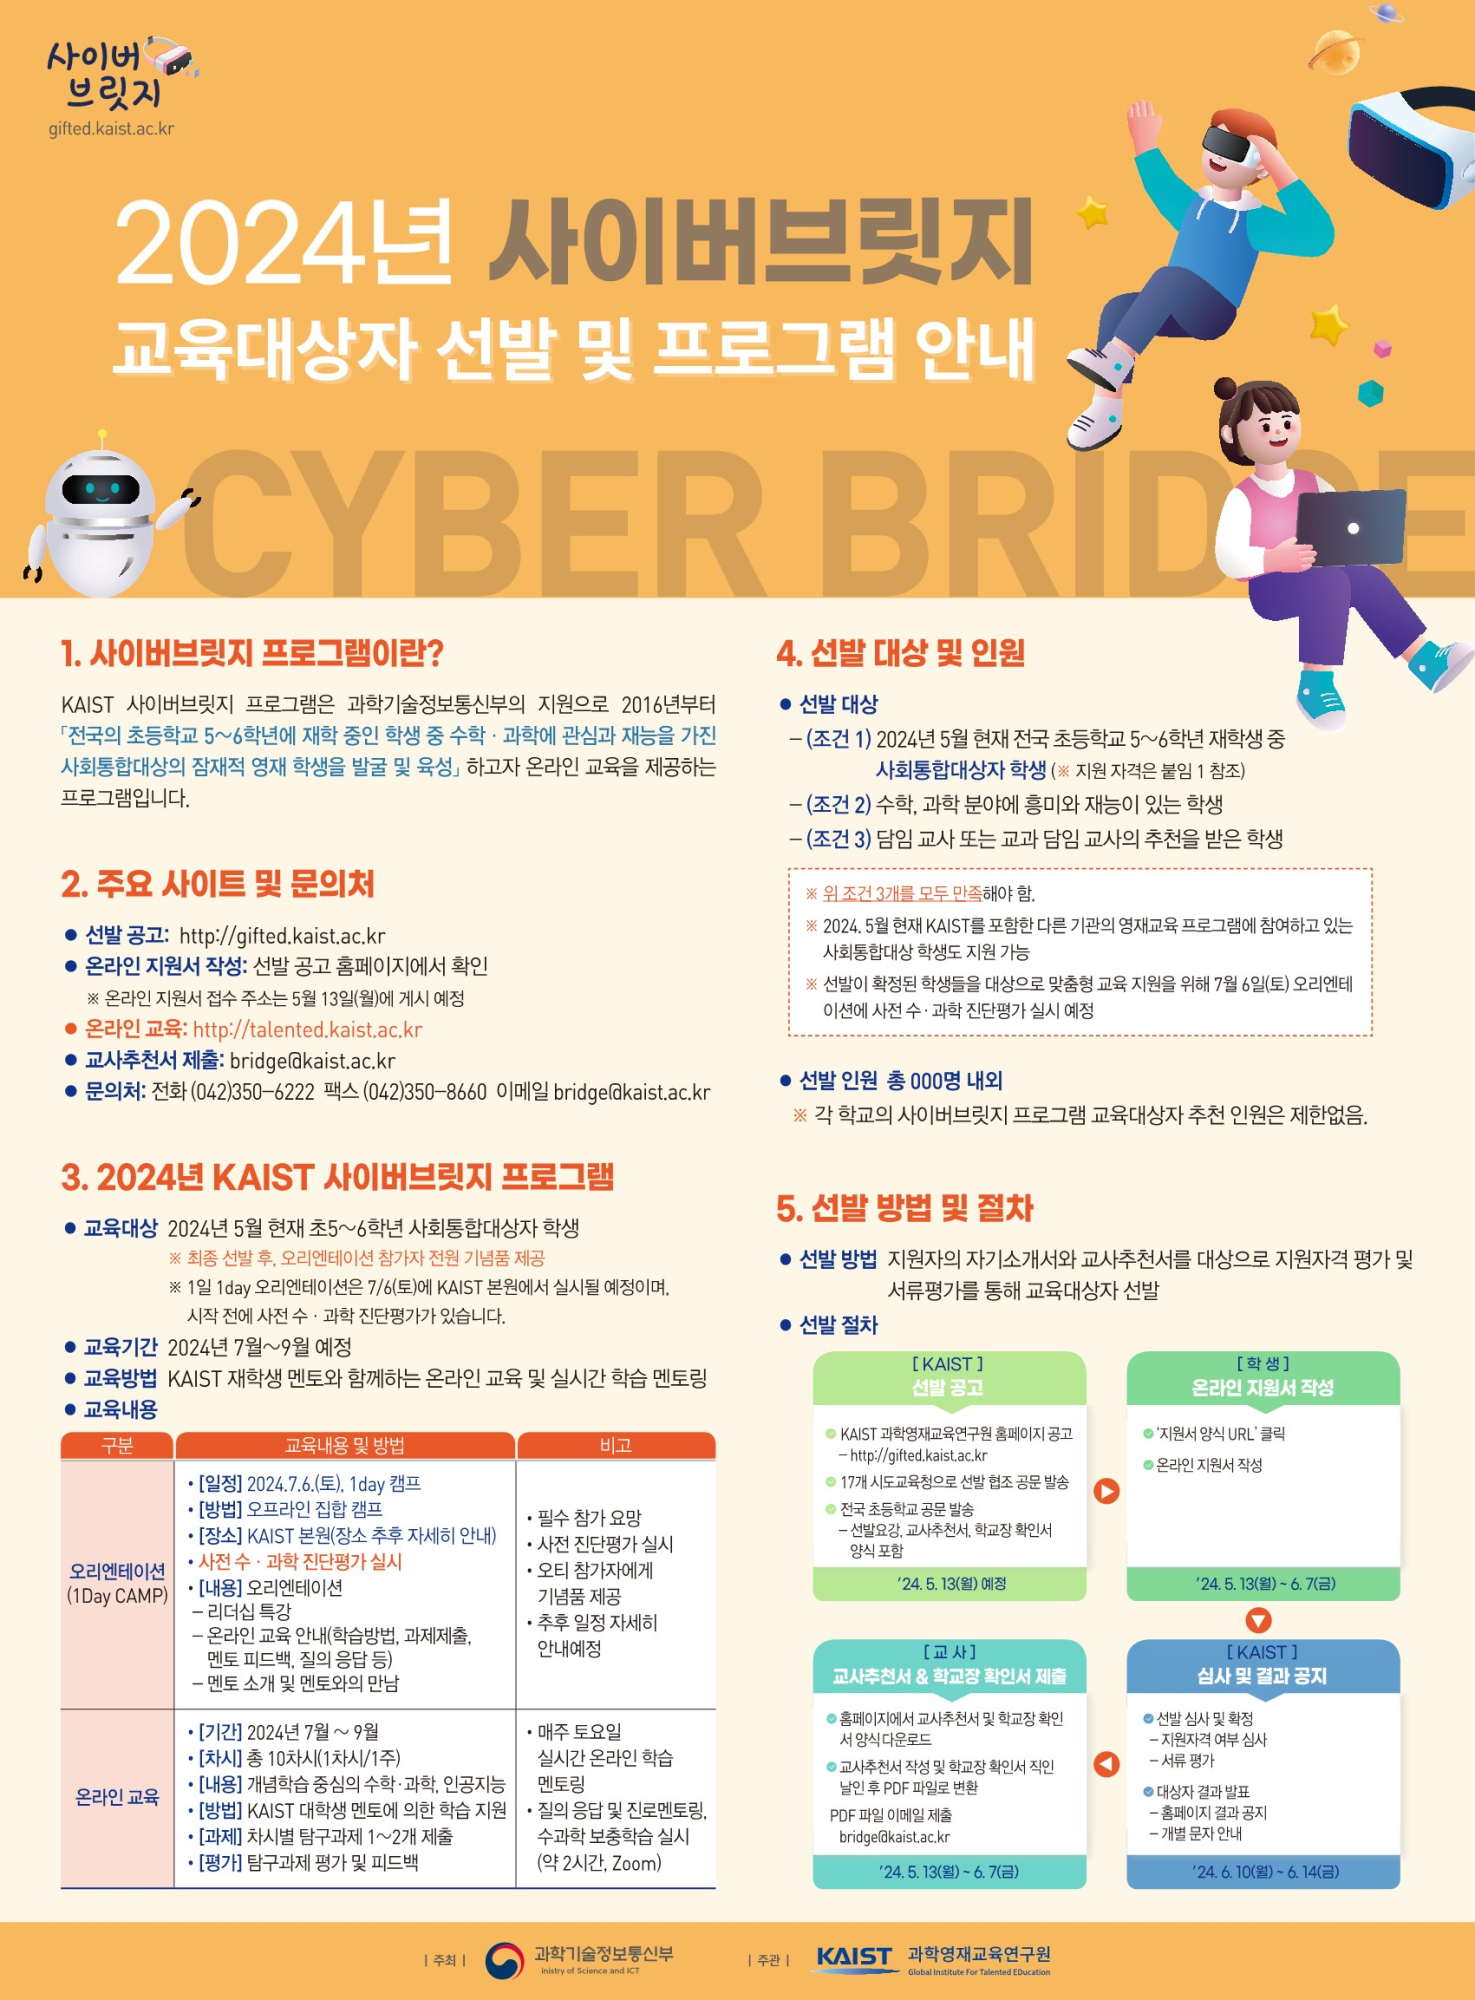 한국과학기술원(kaist) 영재정책센터_첨부2_ 2024 KAIST 사이버브릿지 프로그램 선발 포스터_1